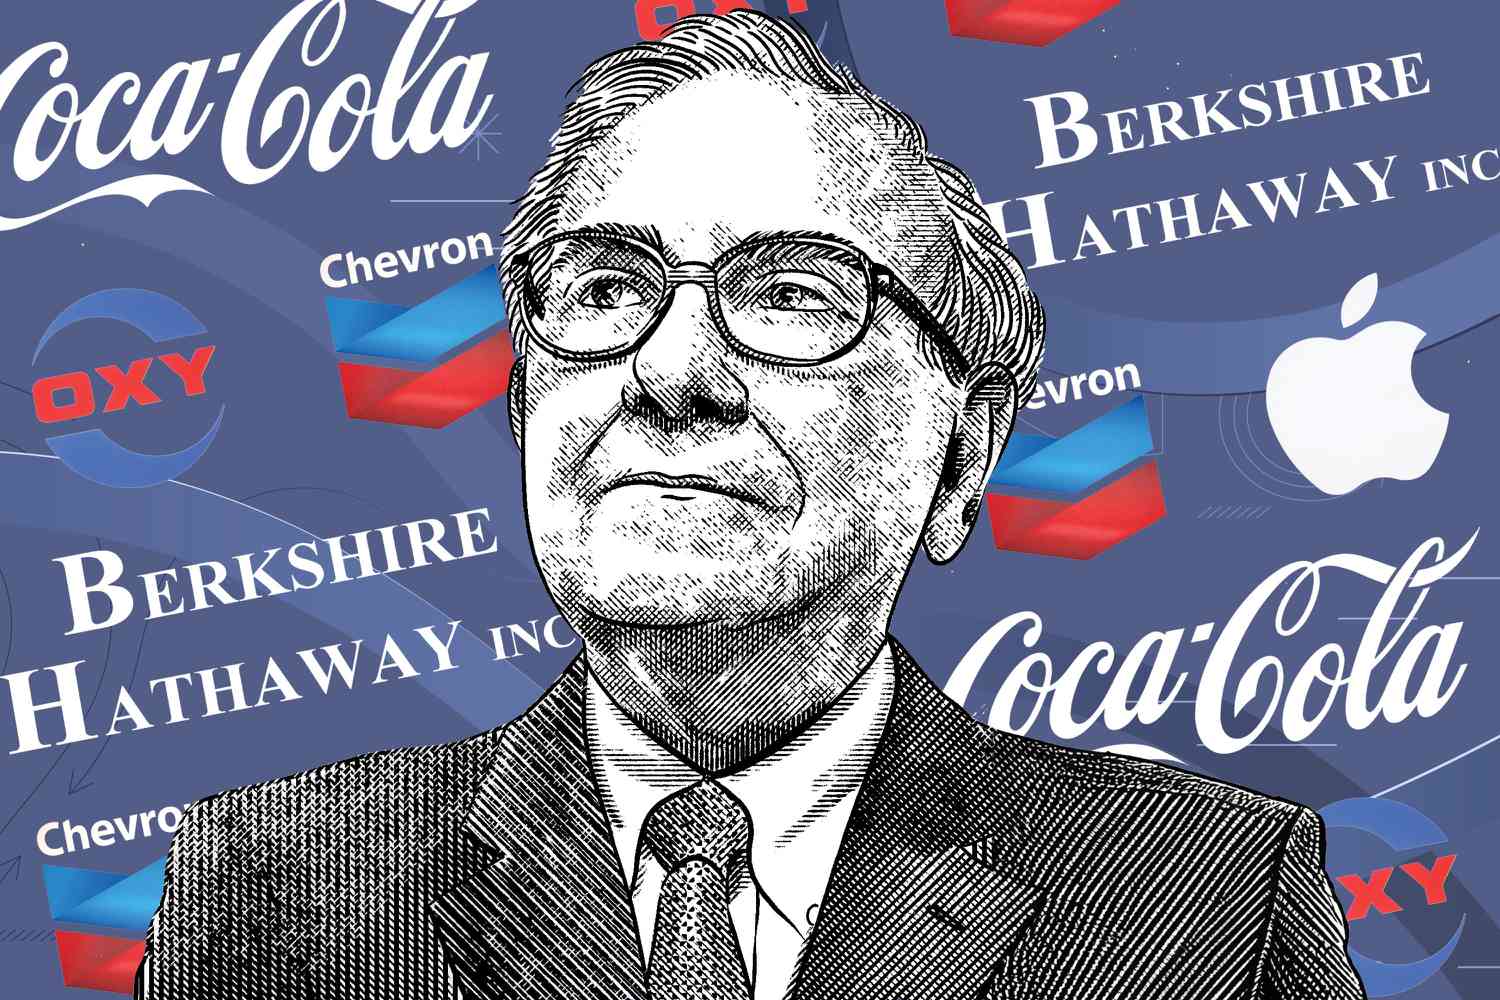 Berkshire Filing Reveals Insurer Chubb as Buffett